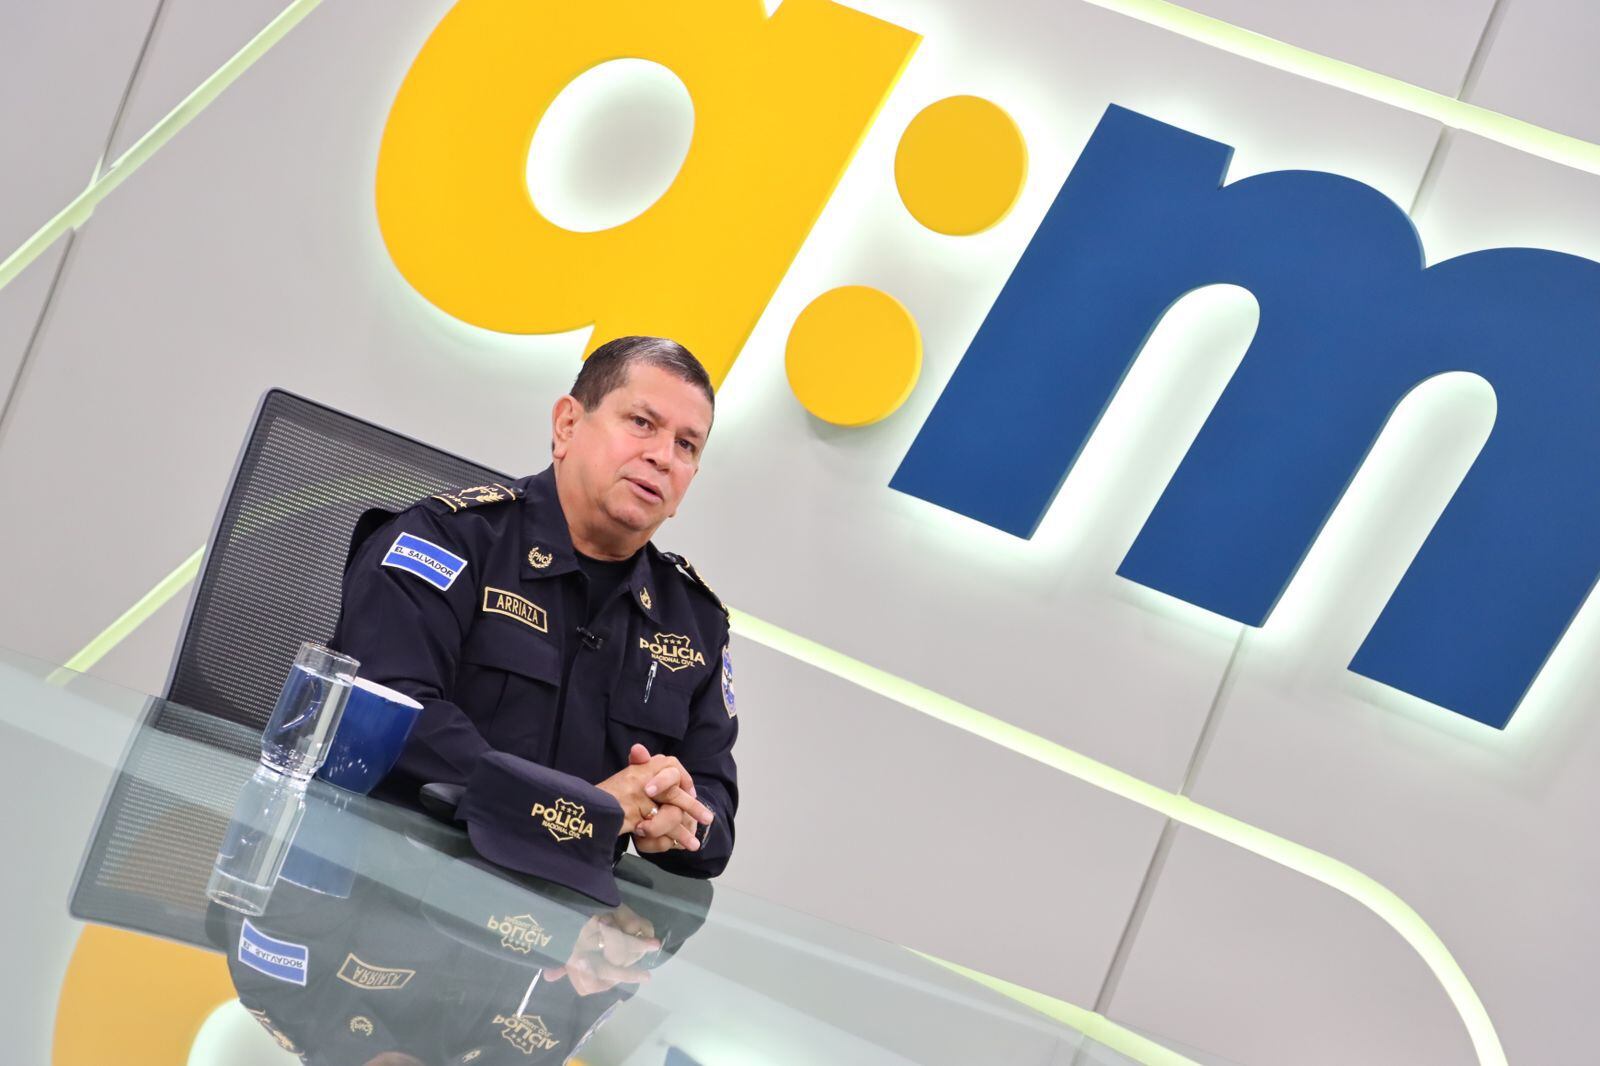 El director general de la Policía Nacional, Mauricio Arriaza, dio declaraciones en un espacio televisivo en el canal gubernamental. Foto tomada de Facebook.